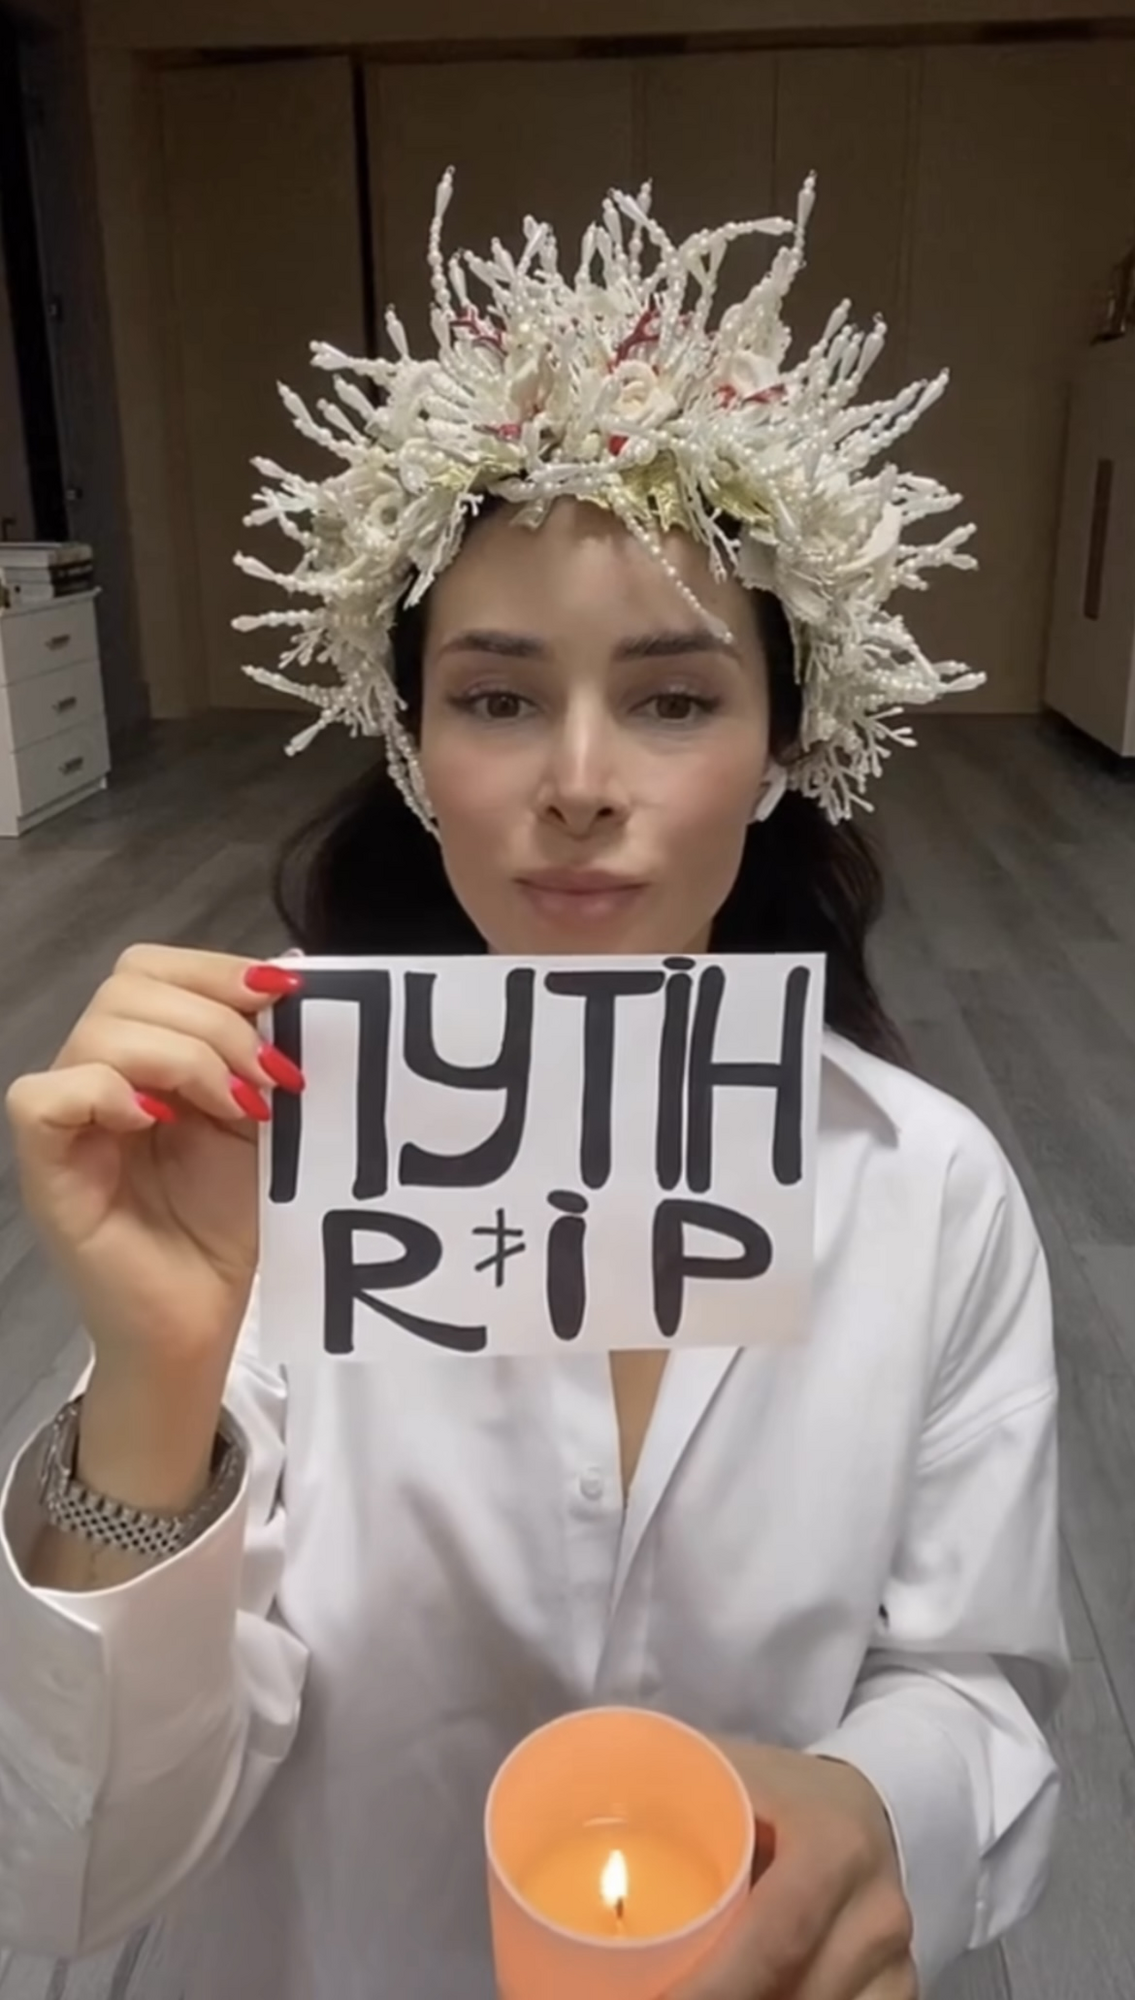 "Путин RIP": Злата Огневич в образе гадалки провела шутливый обряд. Видео